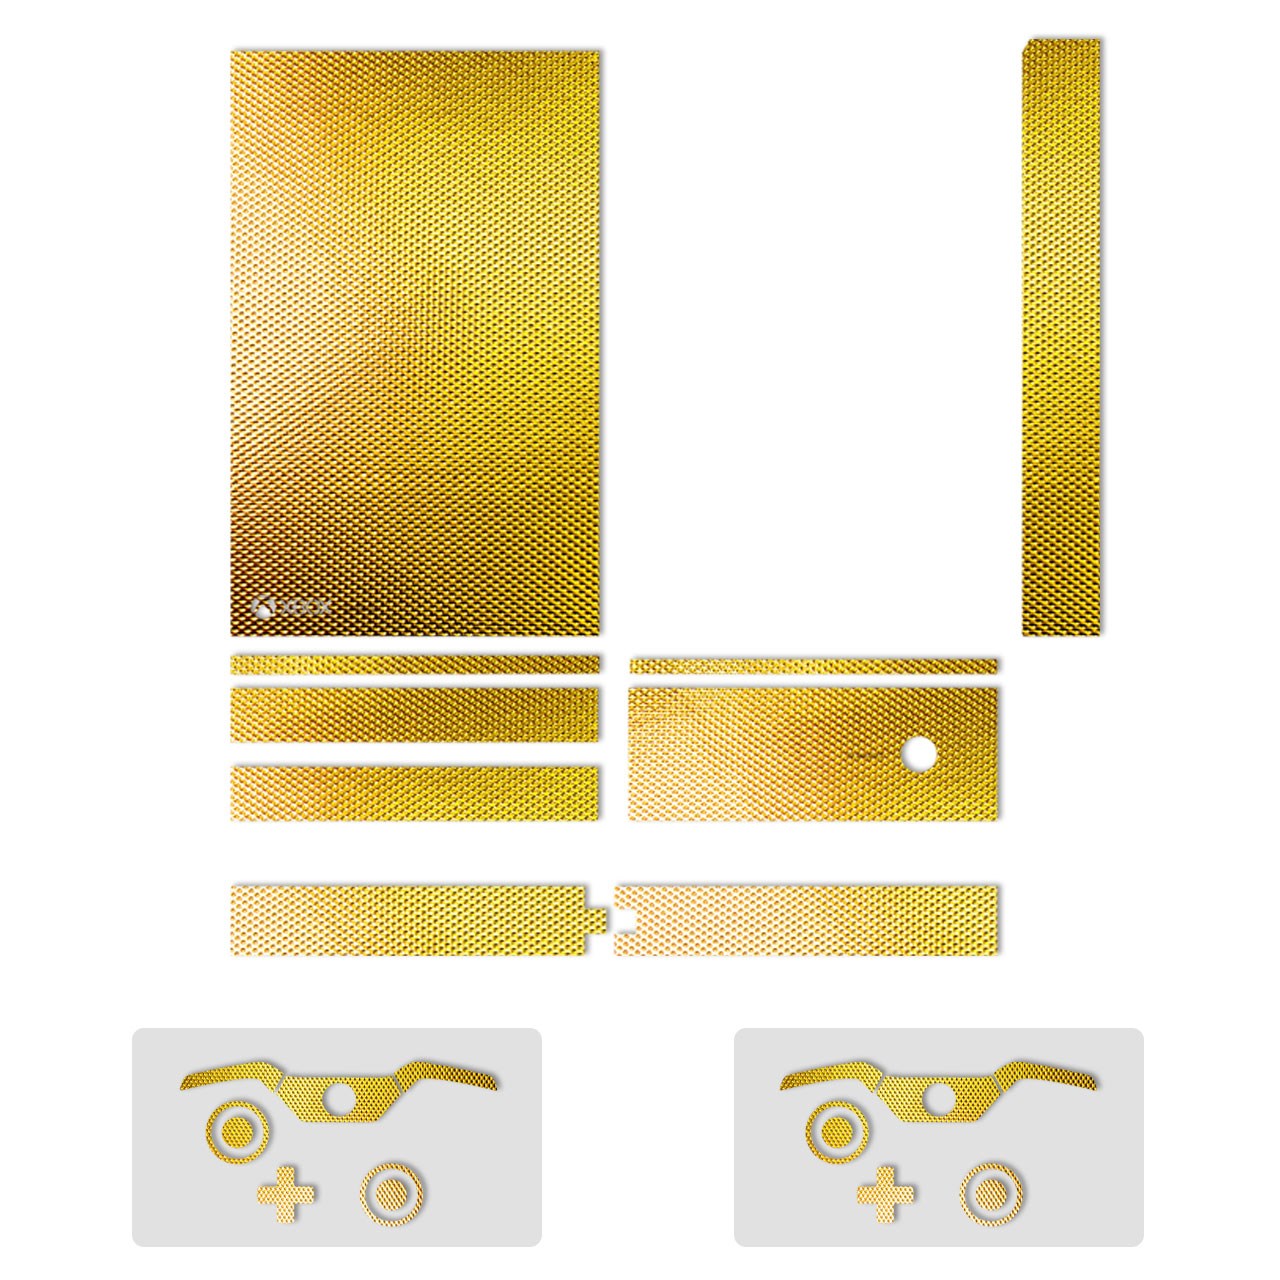 برچسب تزئینی ماهوت مدلShine-Gold Texture مناسب برای  کنسول بازی Xbox One